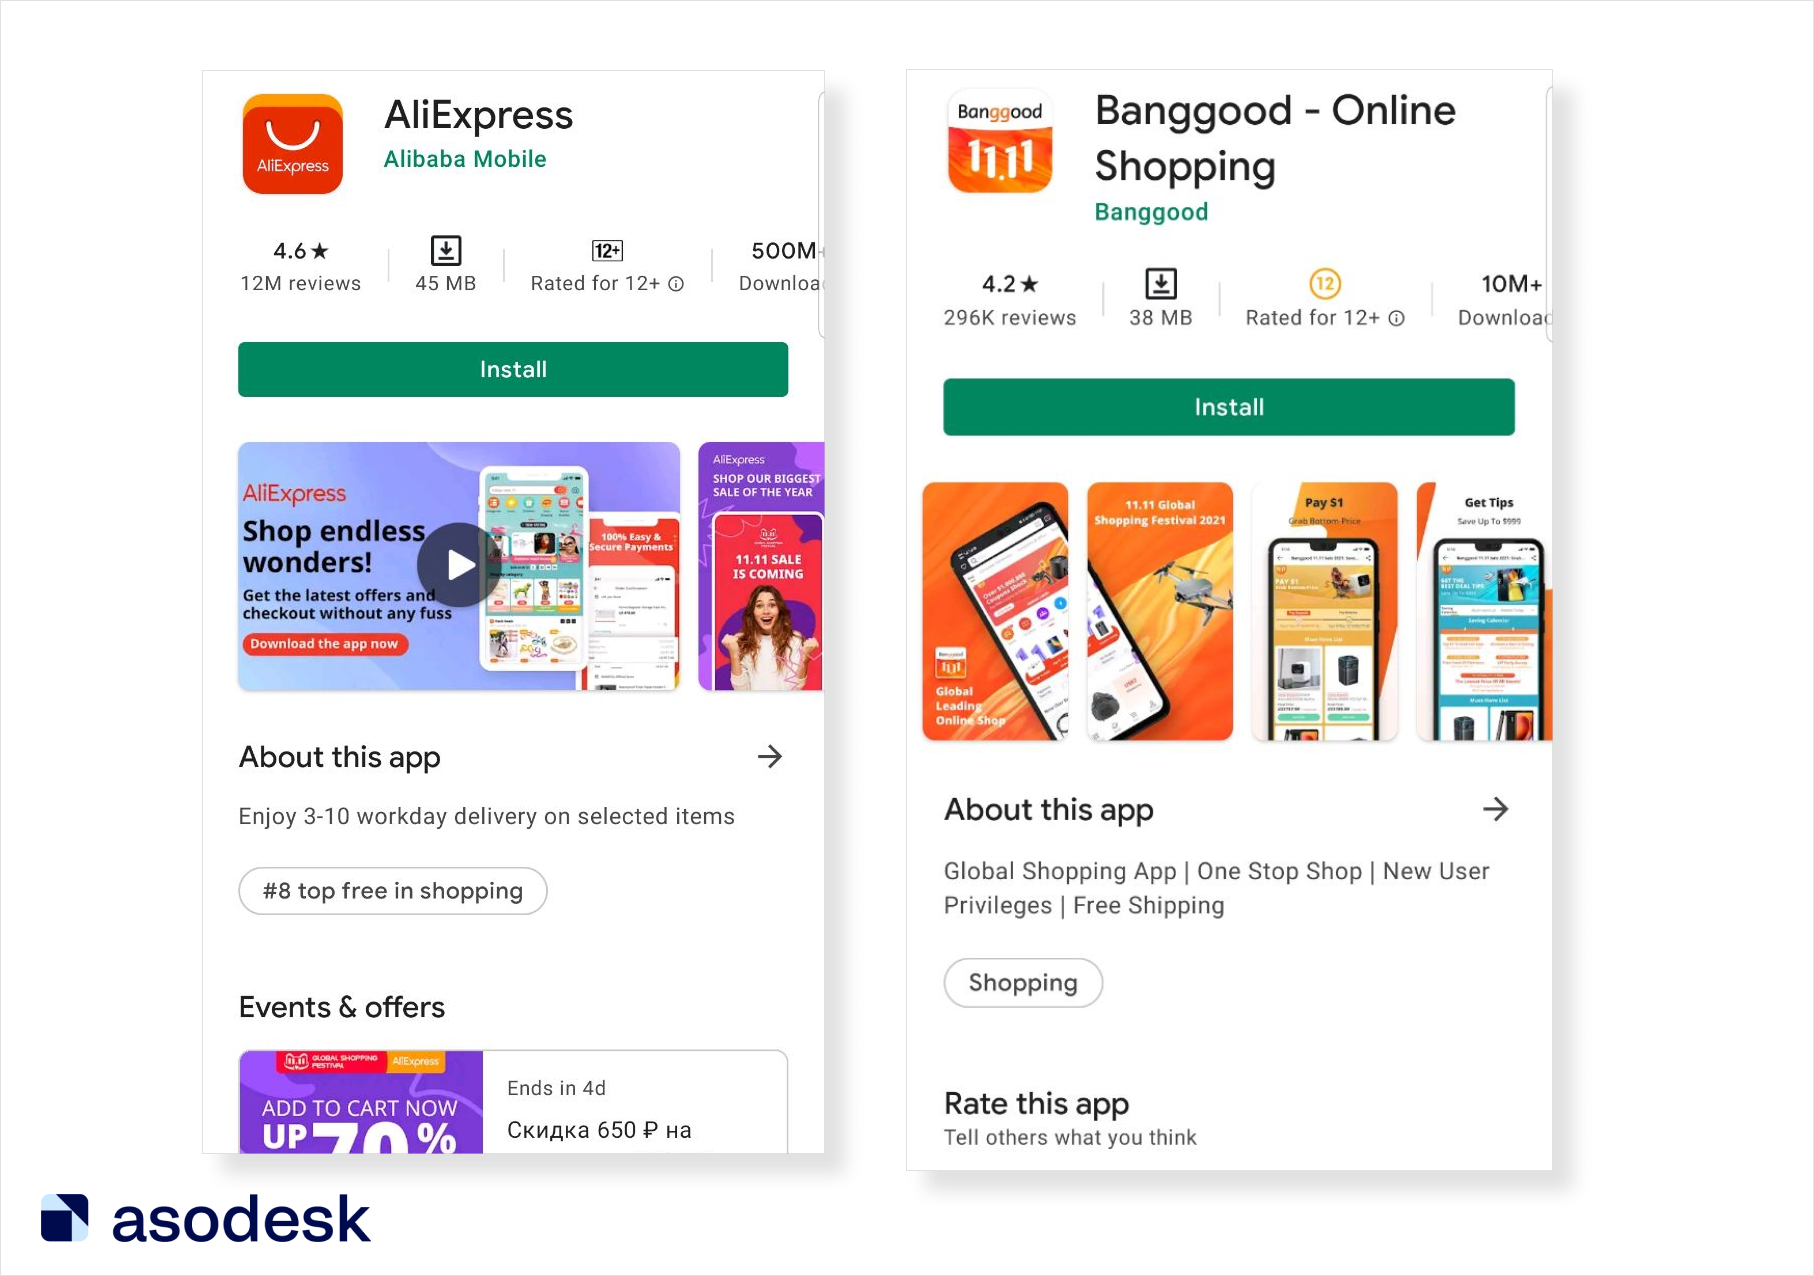 Оформление страниц приложений AliExpress и Bangood перед акцией 11.11 в Google Play